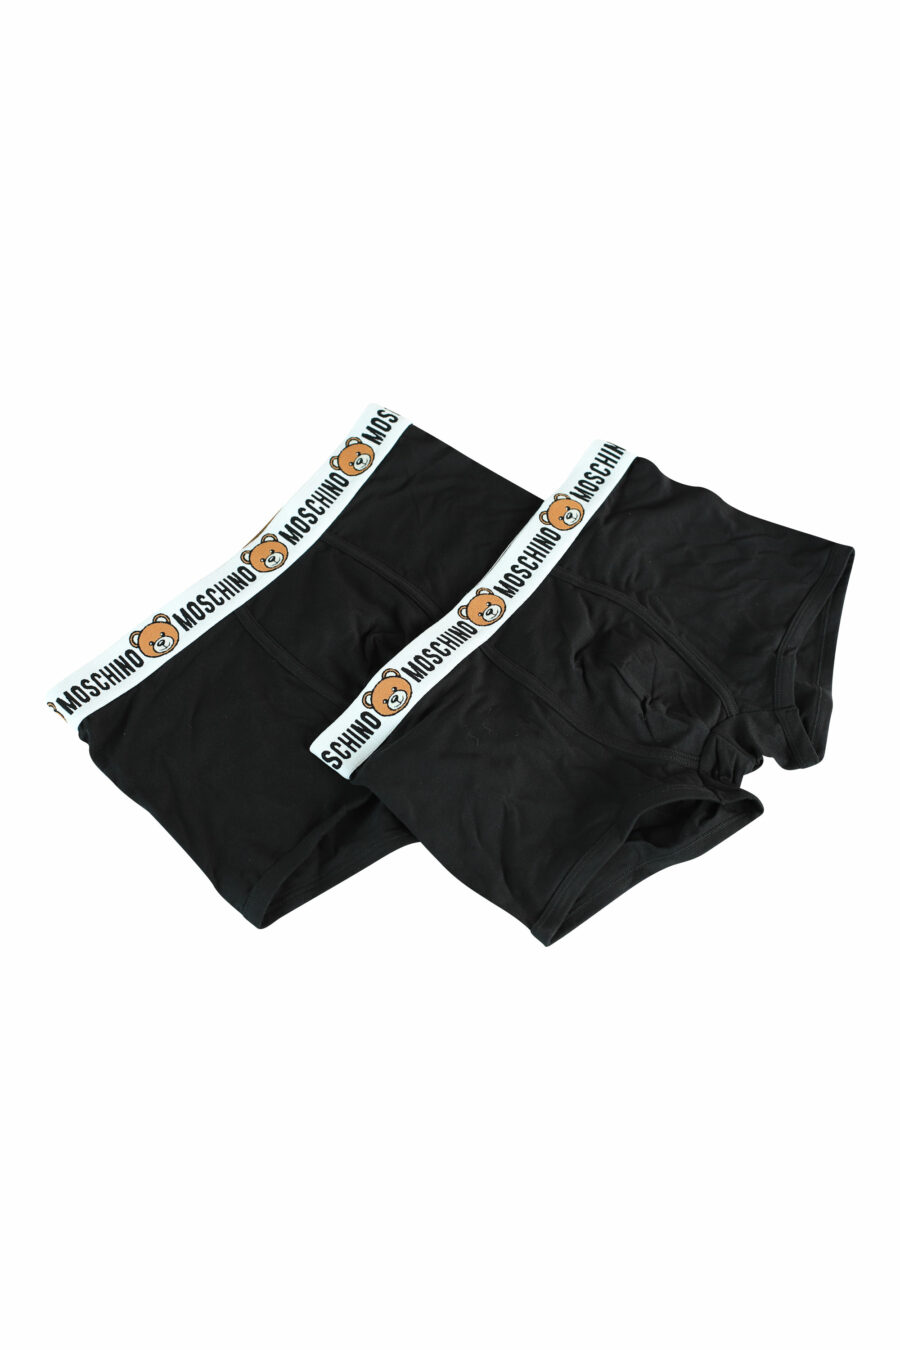 Pack de dos boxers negros con logo oso en cinturilla - 889316228779